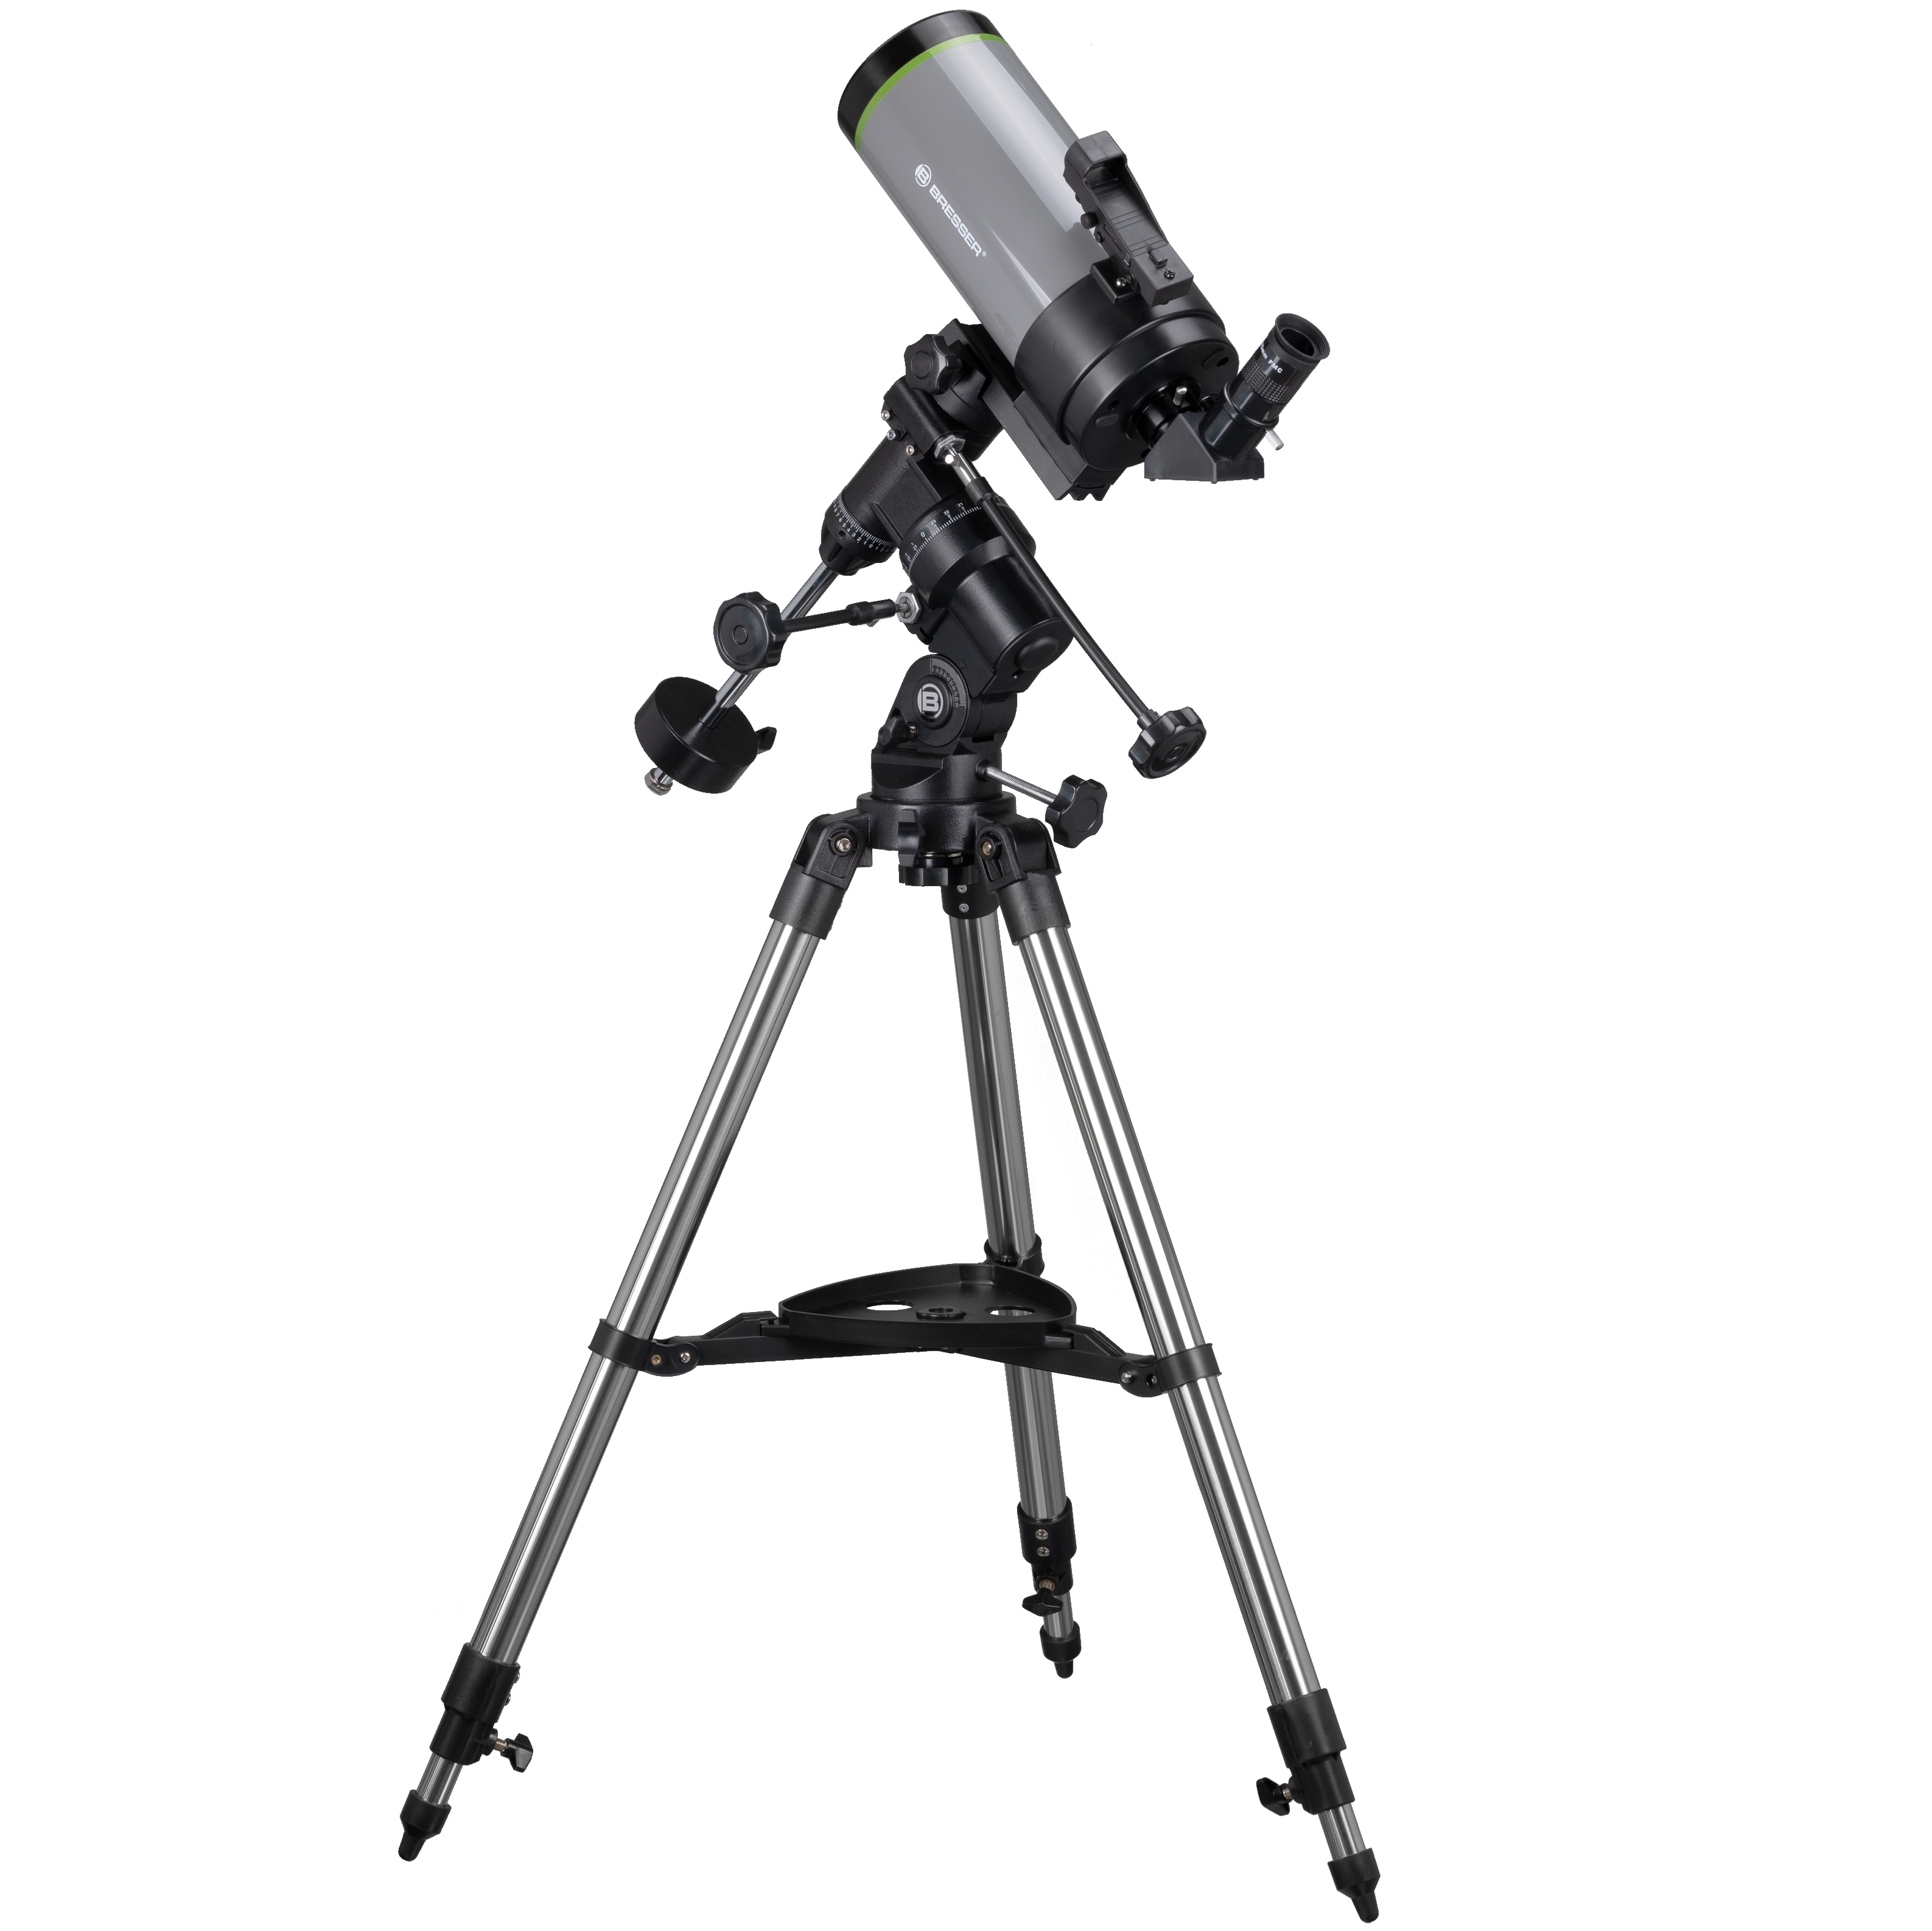 BRESSER FirstLight MAK 100/1400 Teleskop mit EQ-3 Montierung